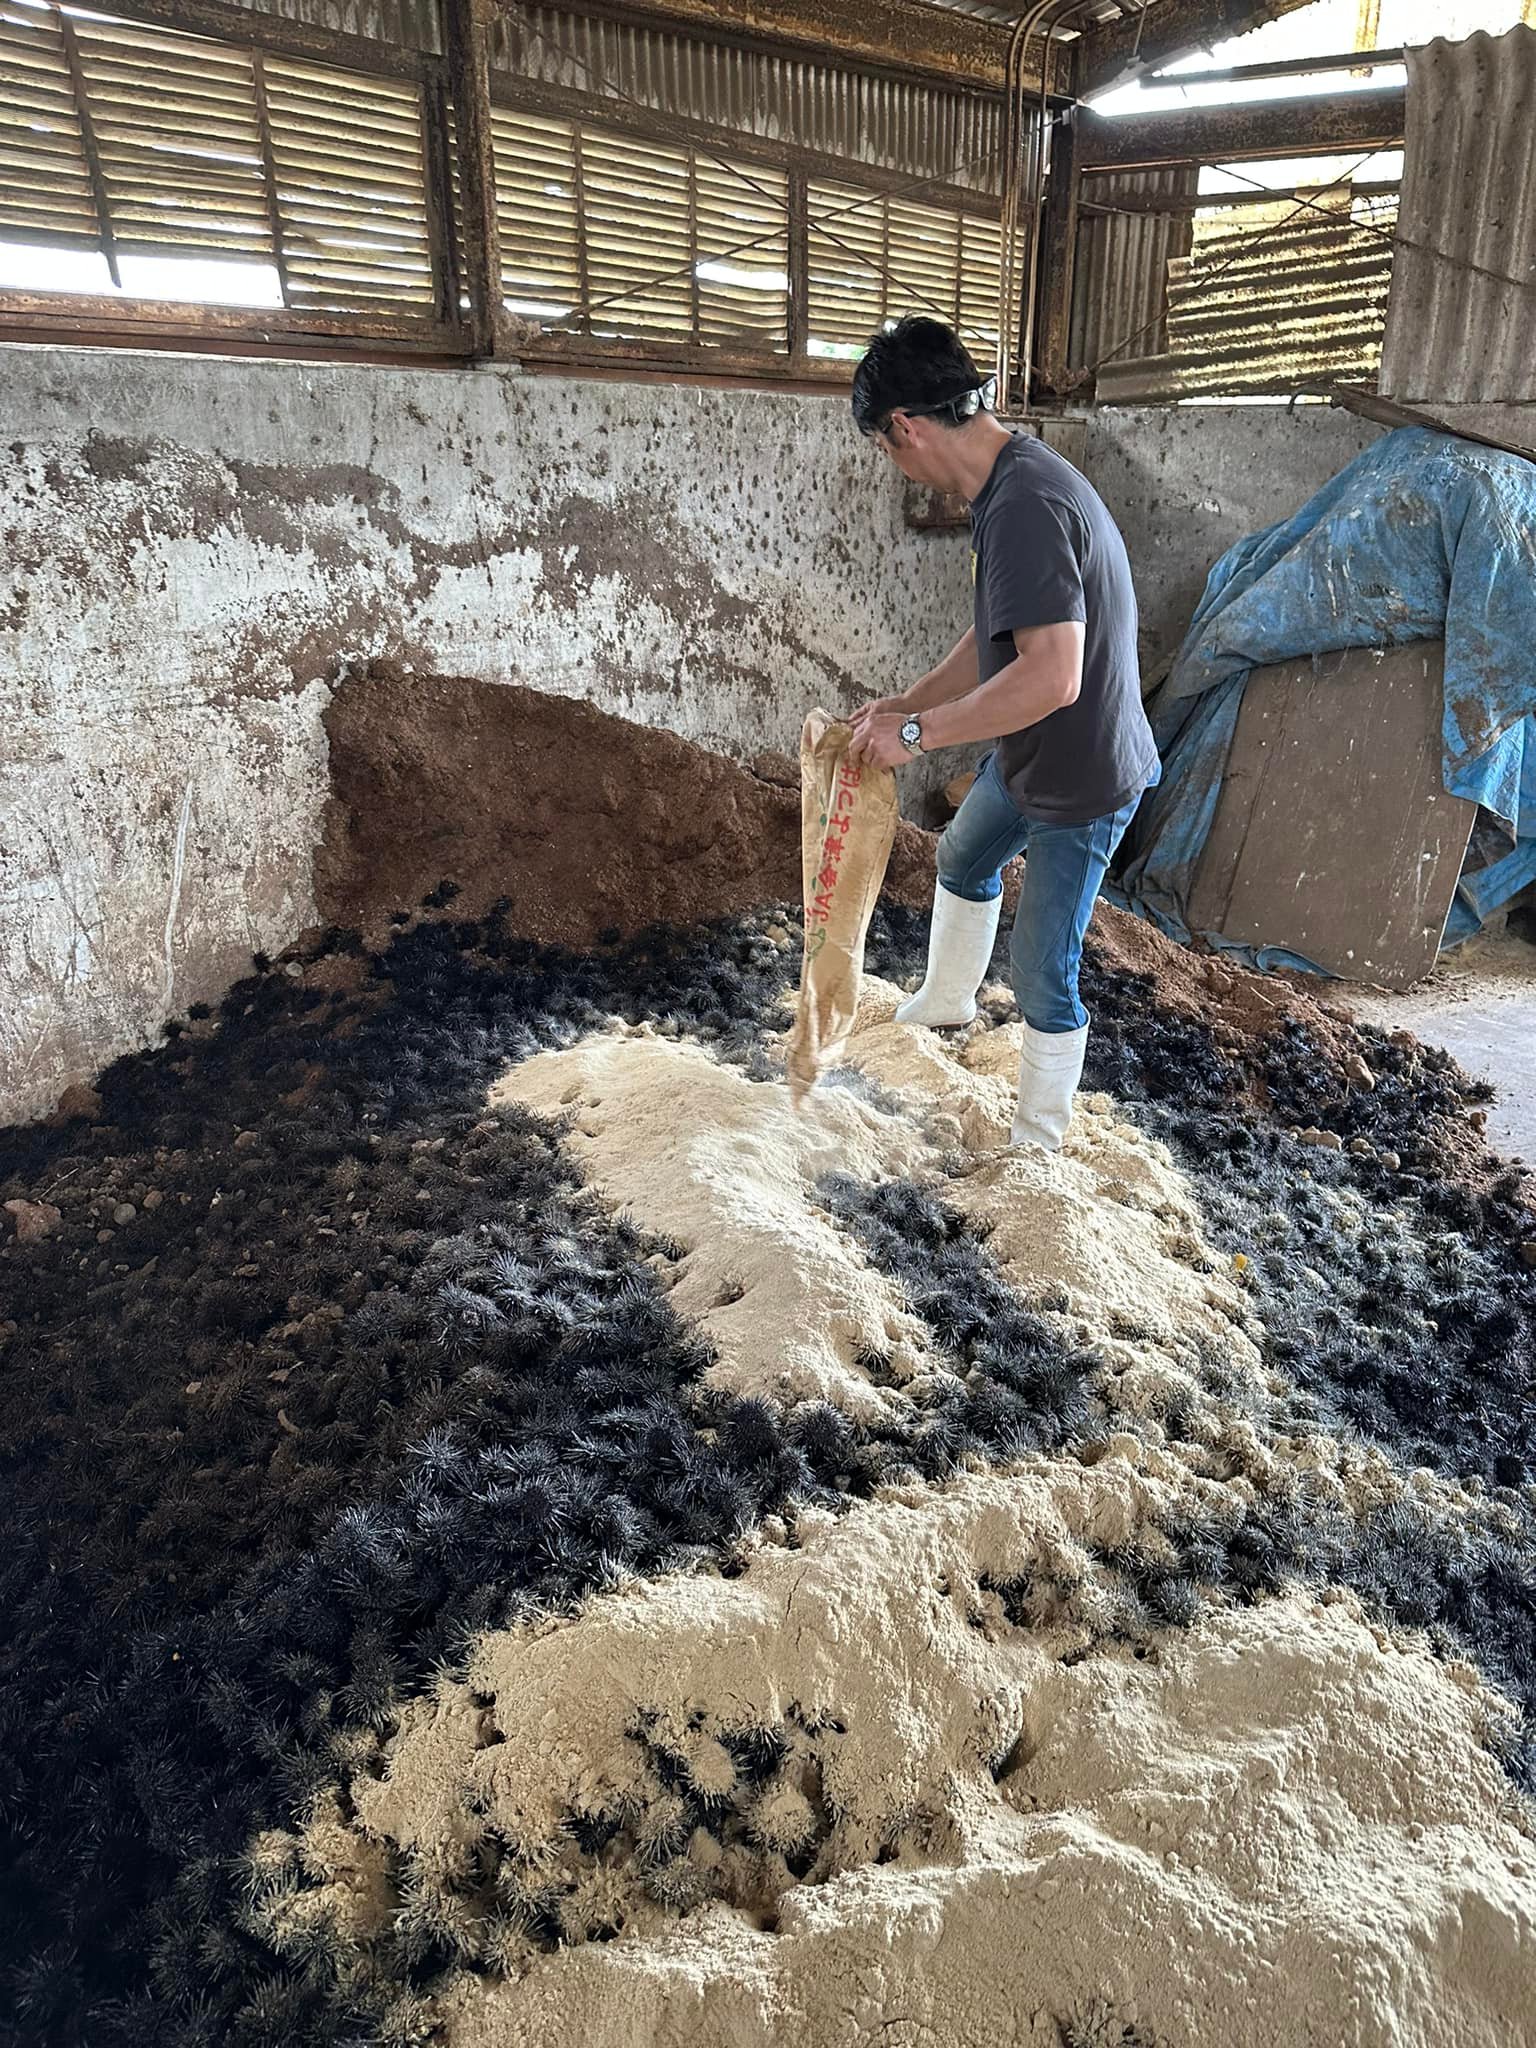 葉山マルシェそして石井ファームを経営する裕一は最強サポーターです！ 葉山牛の牛糞堆肥に捕獲したウニと発酵を促進させるために米ヌカを混ぜ合わせて約100日間熟成させて「ウニ堆肥」を作っています。 私たちは石井ファームの堆肥場の一角を占有させてもらっています。